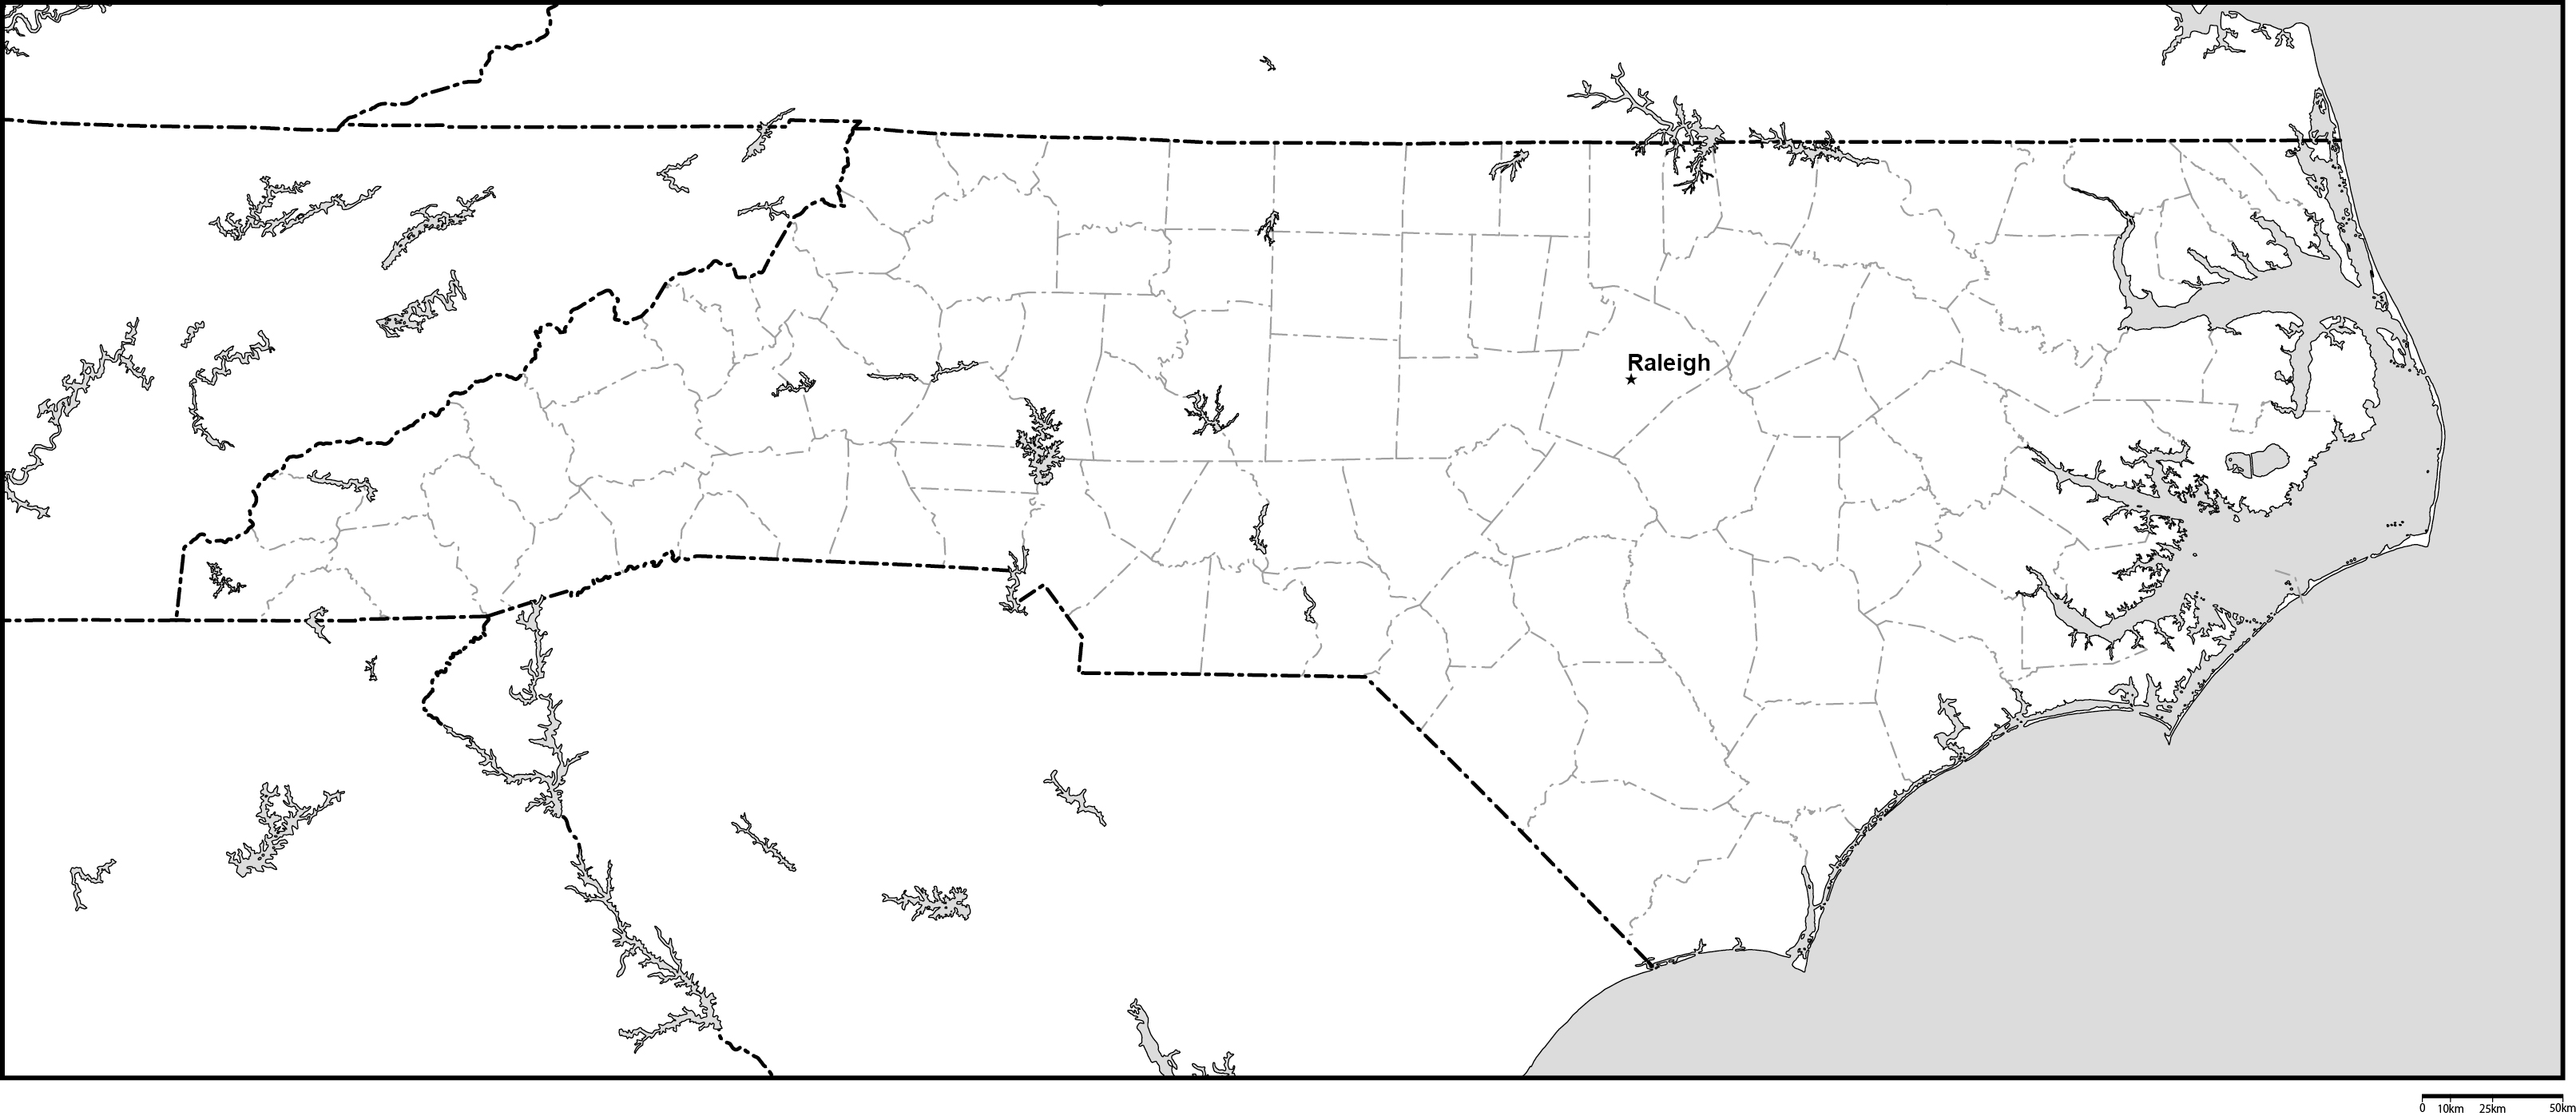 ノースカロライナ州郡分け白地図州都あり(英語)フリーデータの画像